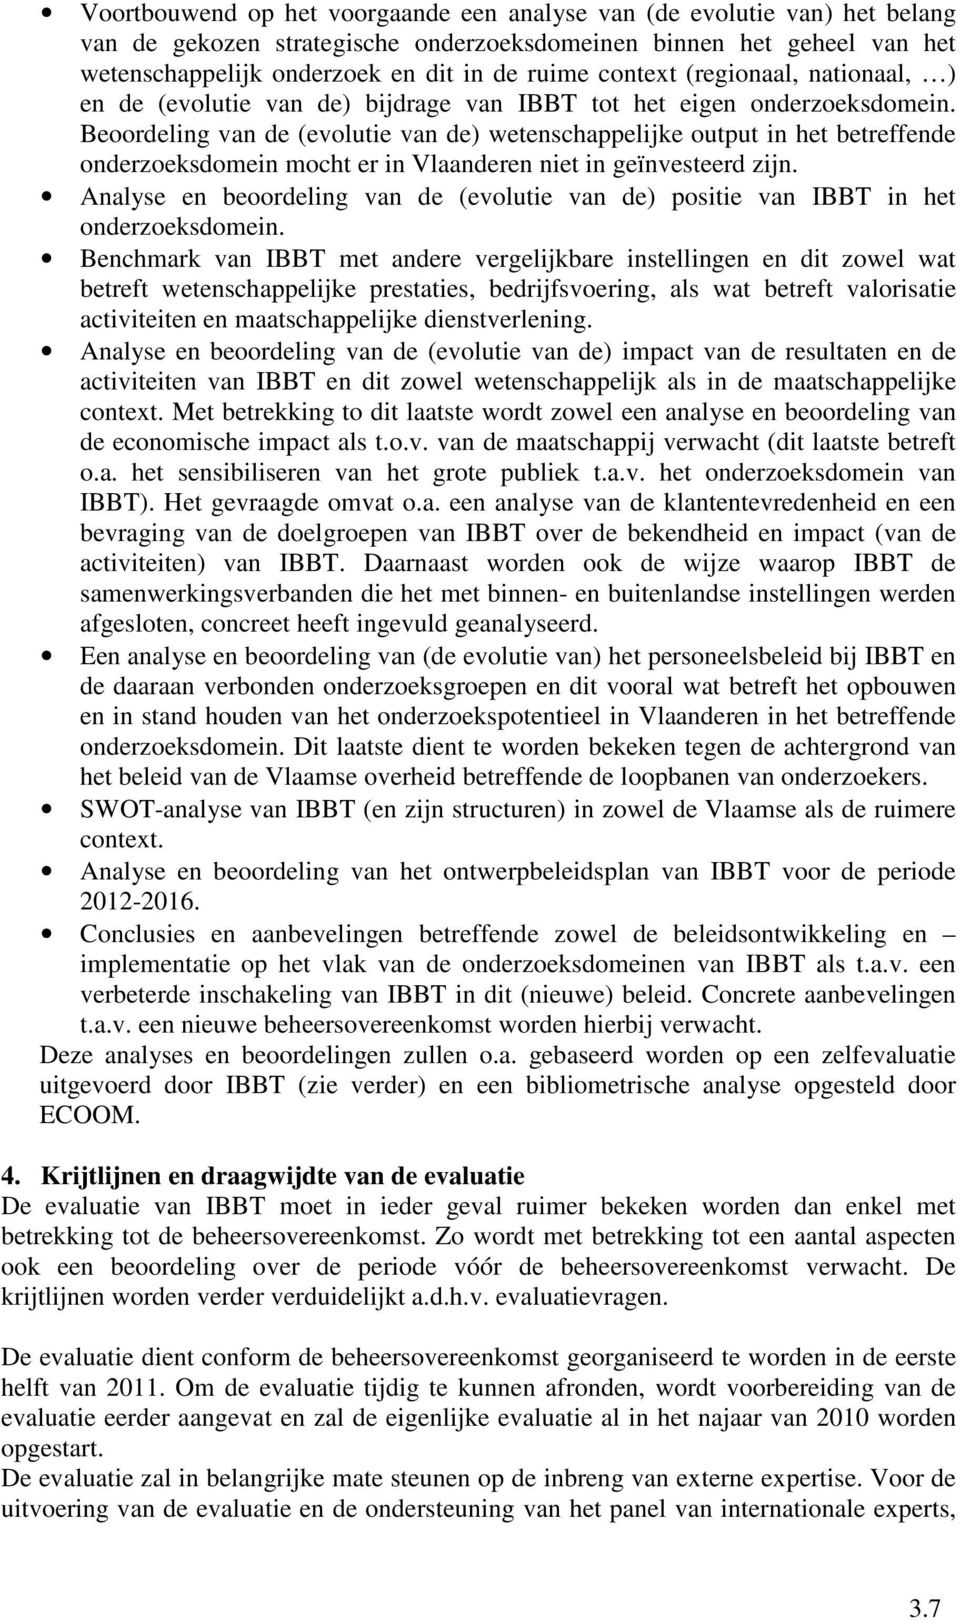 Beoordeling van de (evolutie van de) wetenschappelijke output in het betreffende onderzoeksdomein mocht er in Vlaanderen niet in geïnvesteerd zijn.